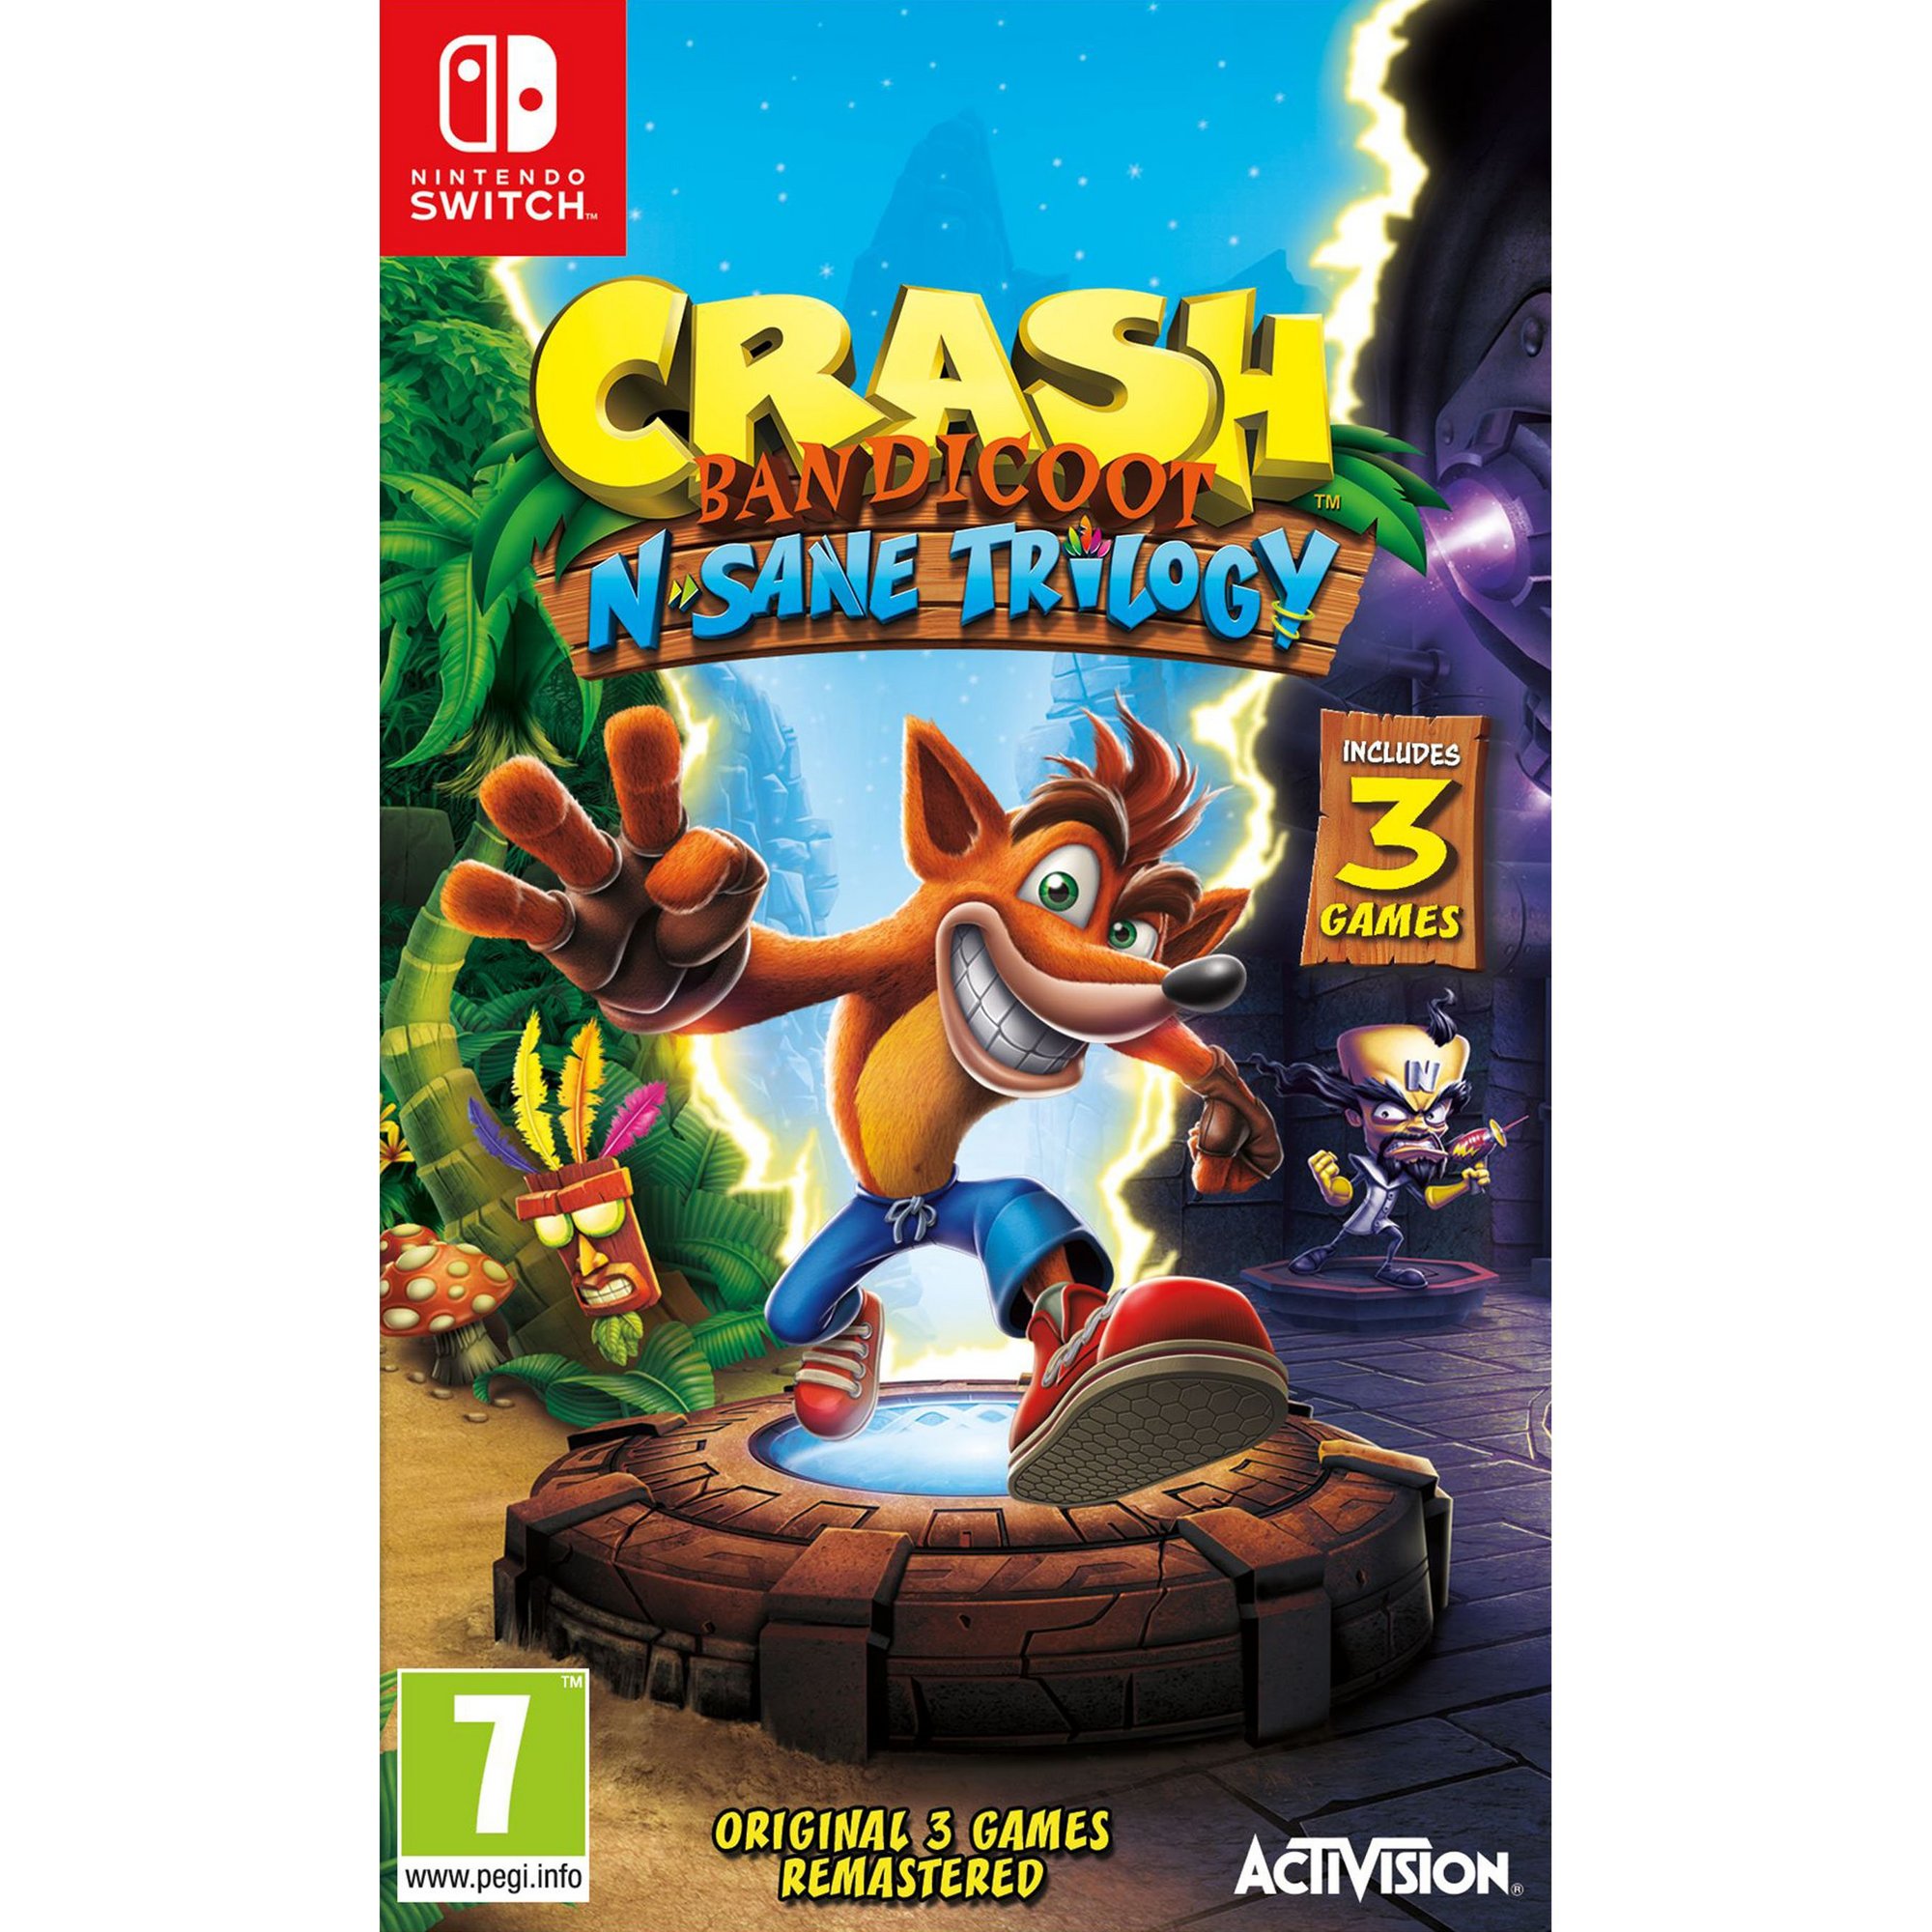 Nintendo Switch: Crash Bandicoot N.Sane Trilogy